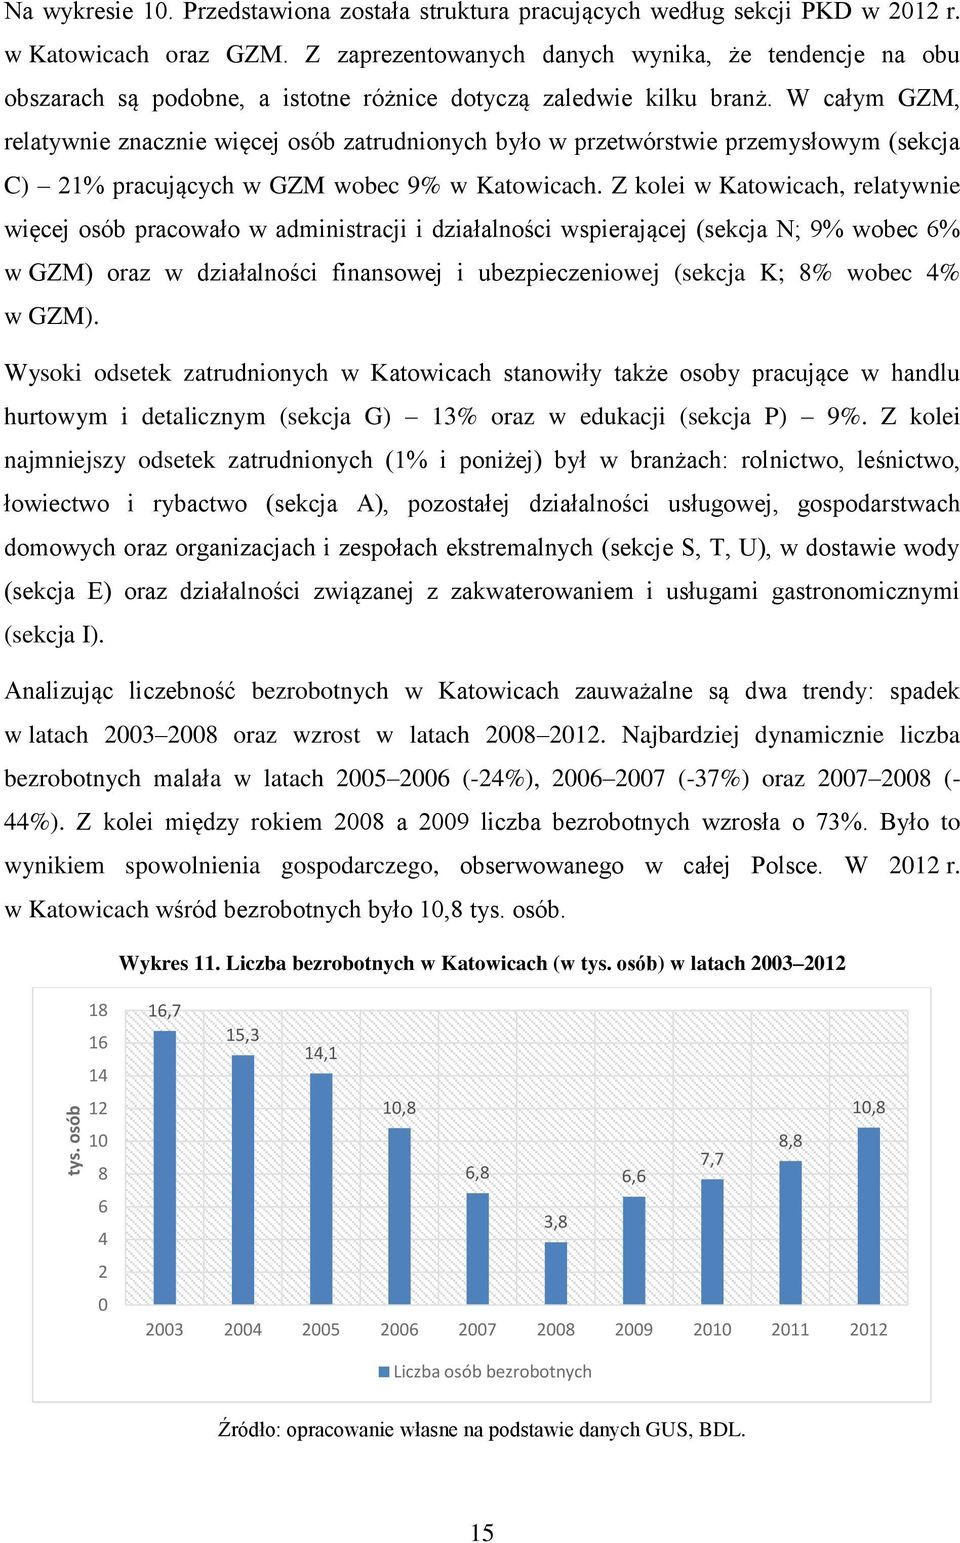 W całym GZM, relatywnie znacznie więcej osób zatrudnionych było w przetwórstwie przemysłowym (sekcja C) 21% pracujących w GZM wobec 9% w Katowicach.